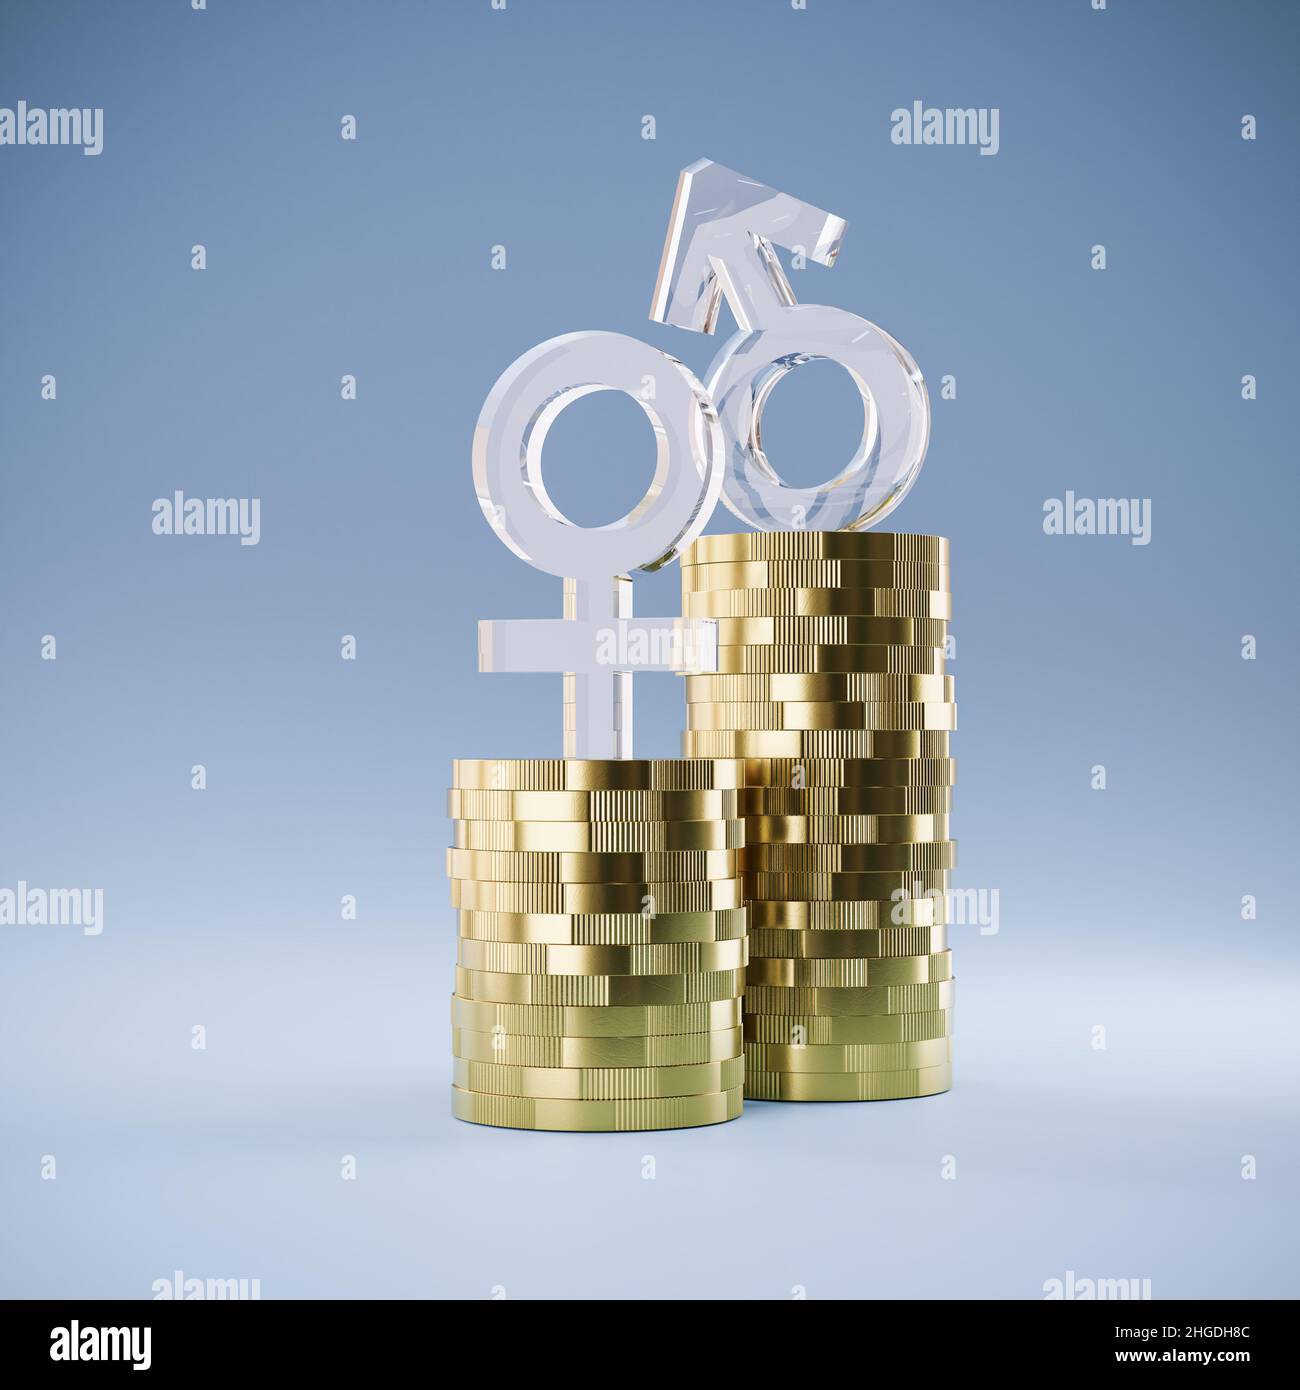 Gender Pay GAP Konzept: Zwei Haufen Münzen mit unterschiedlicher Höhe und männliche und weibliche Symbole aus Glas auf der Oberseite. Stockfoto